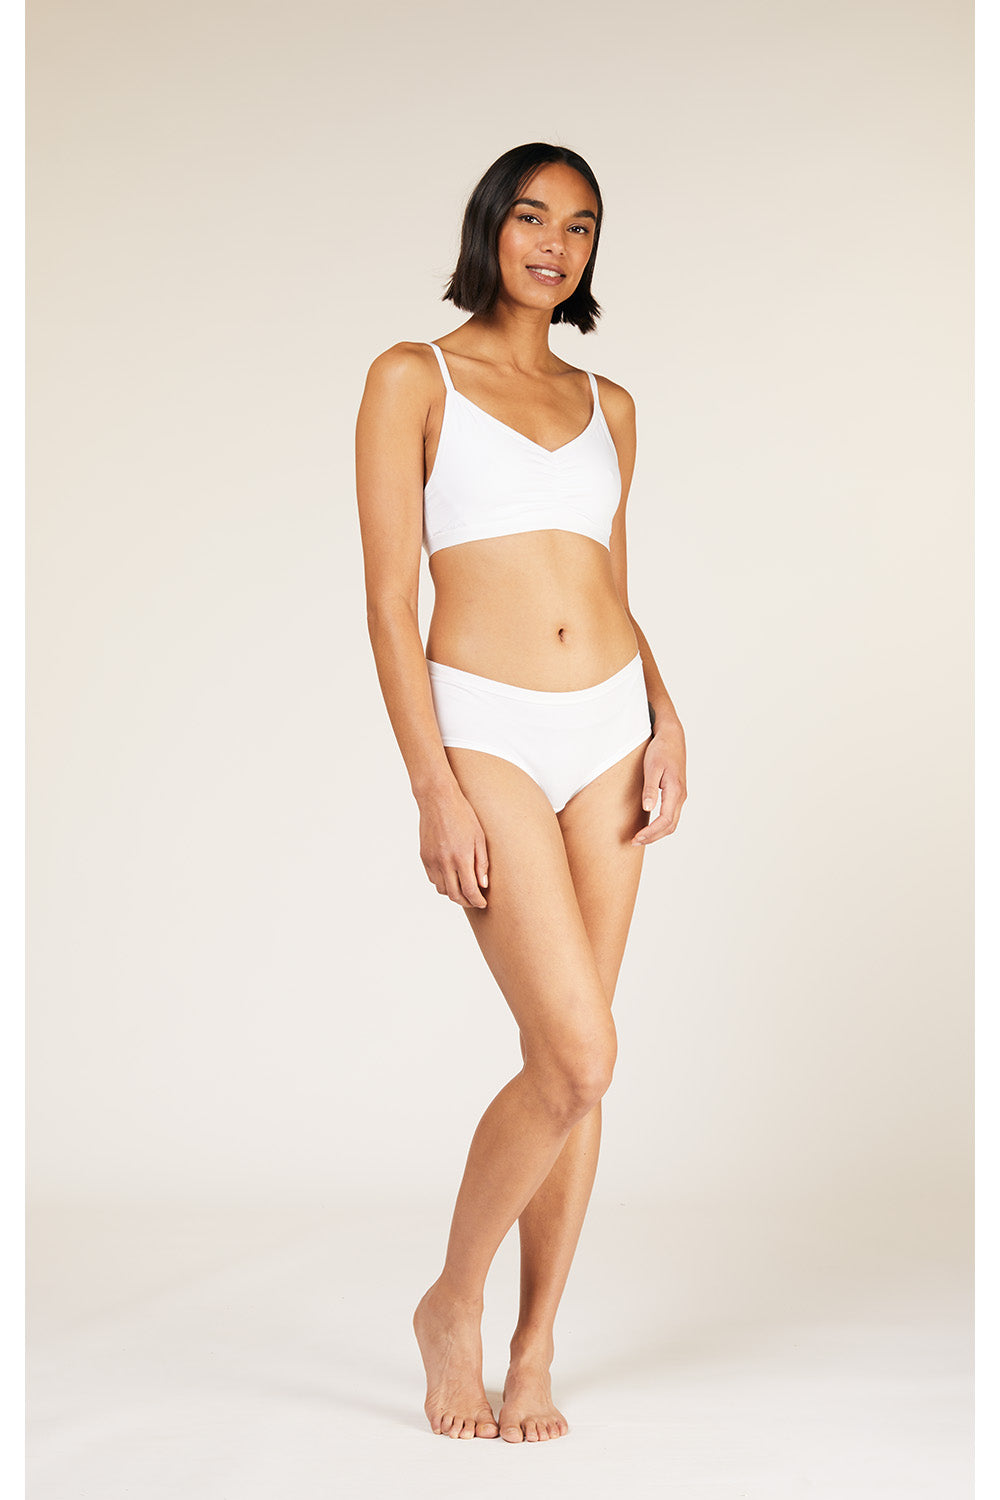 Buy online White Non Padded Regular Bra from lingerie for Women by